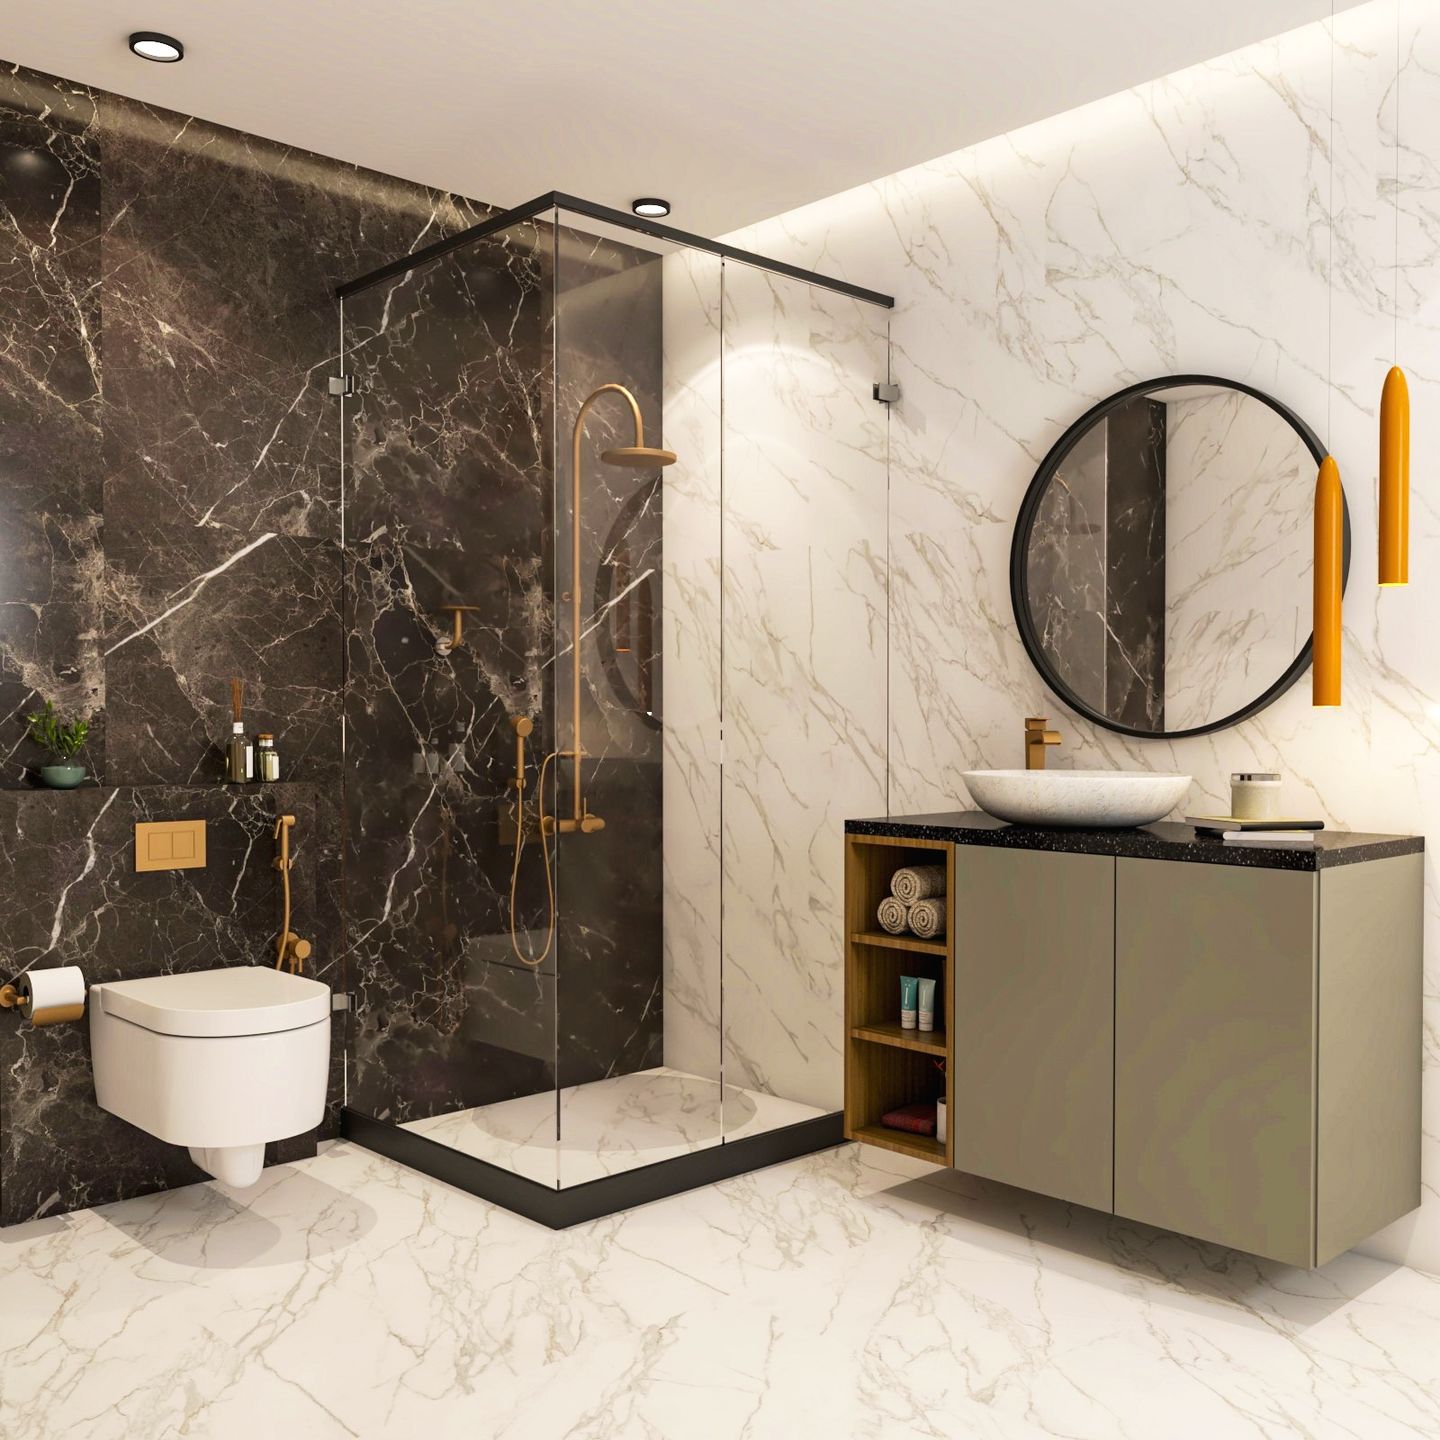 Dark Marble Bathroom Design With Wooden Vanity - Livspace